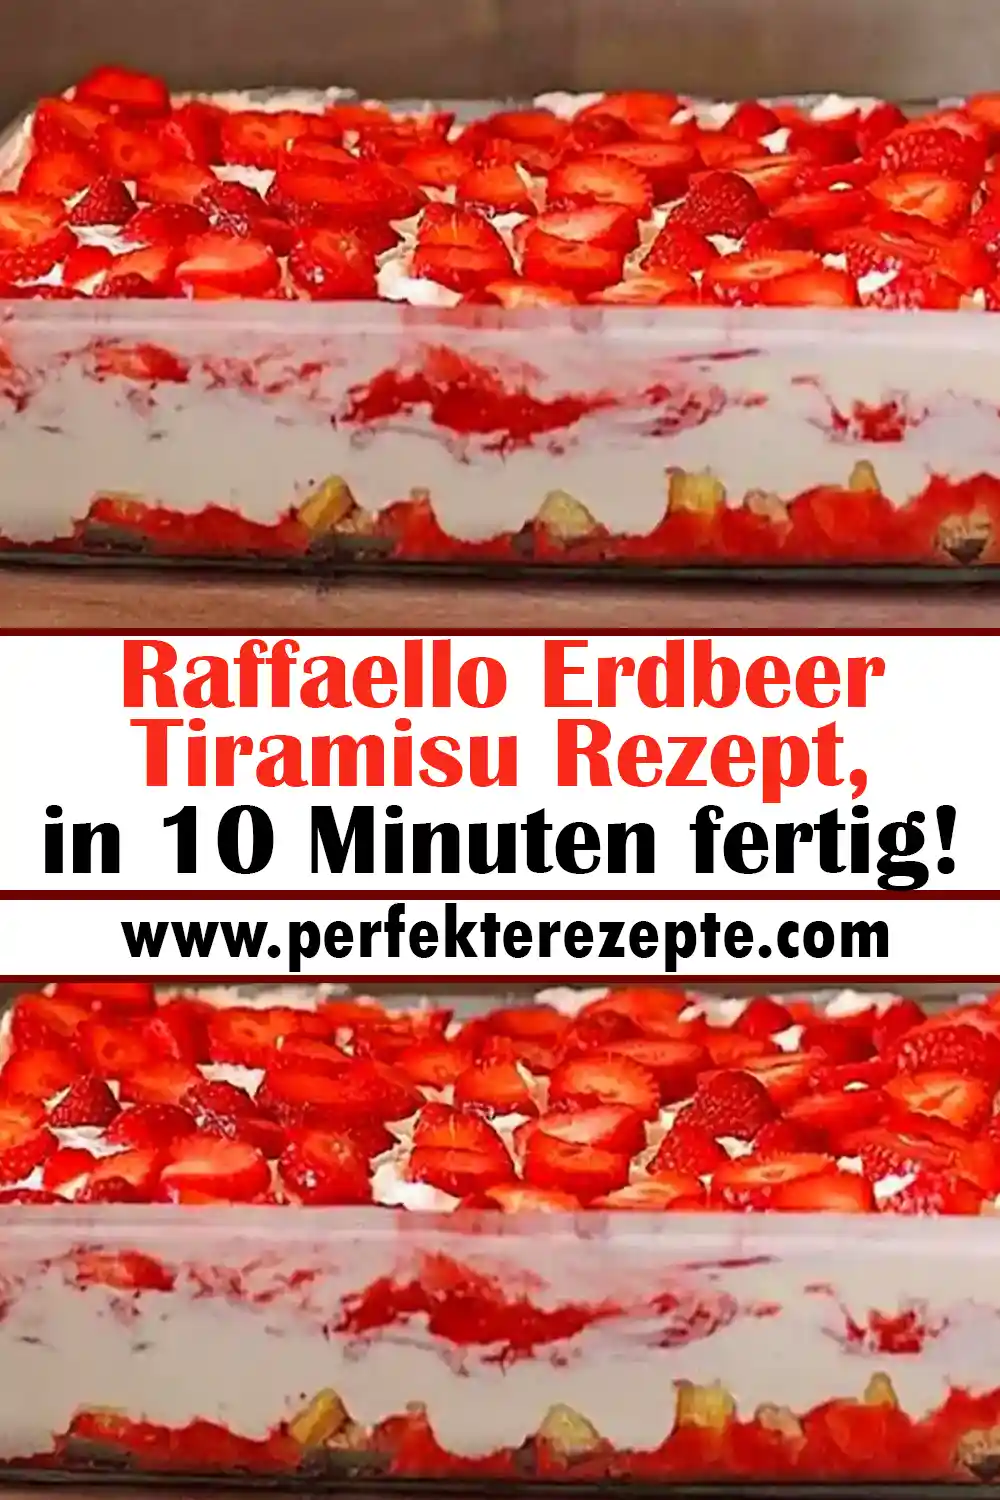 Raffaello Erdbeer Tiramisu Rezept, in 10 Minuten fertig!